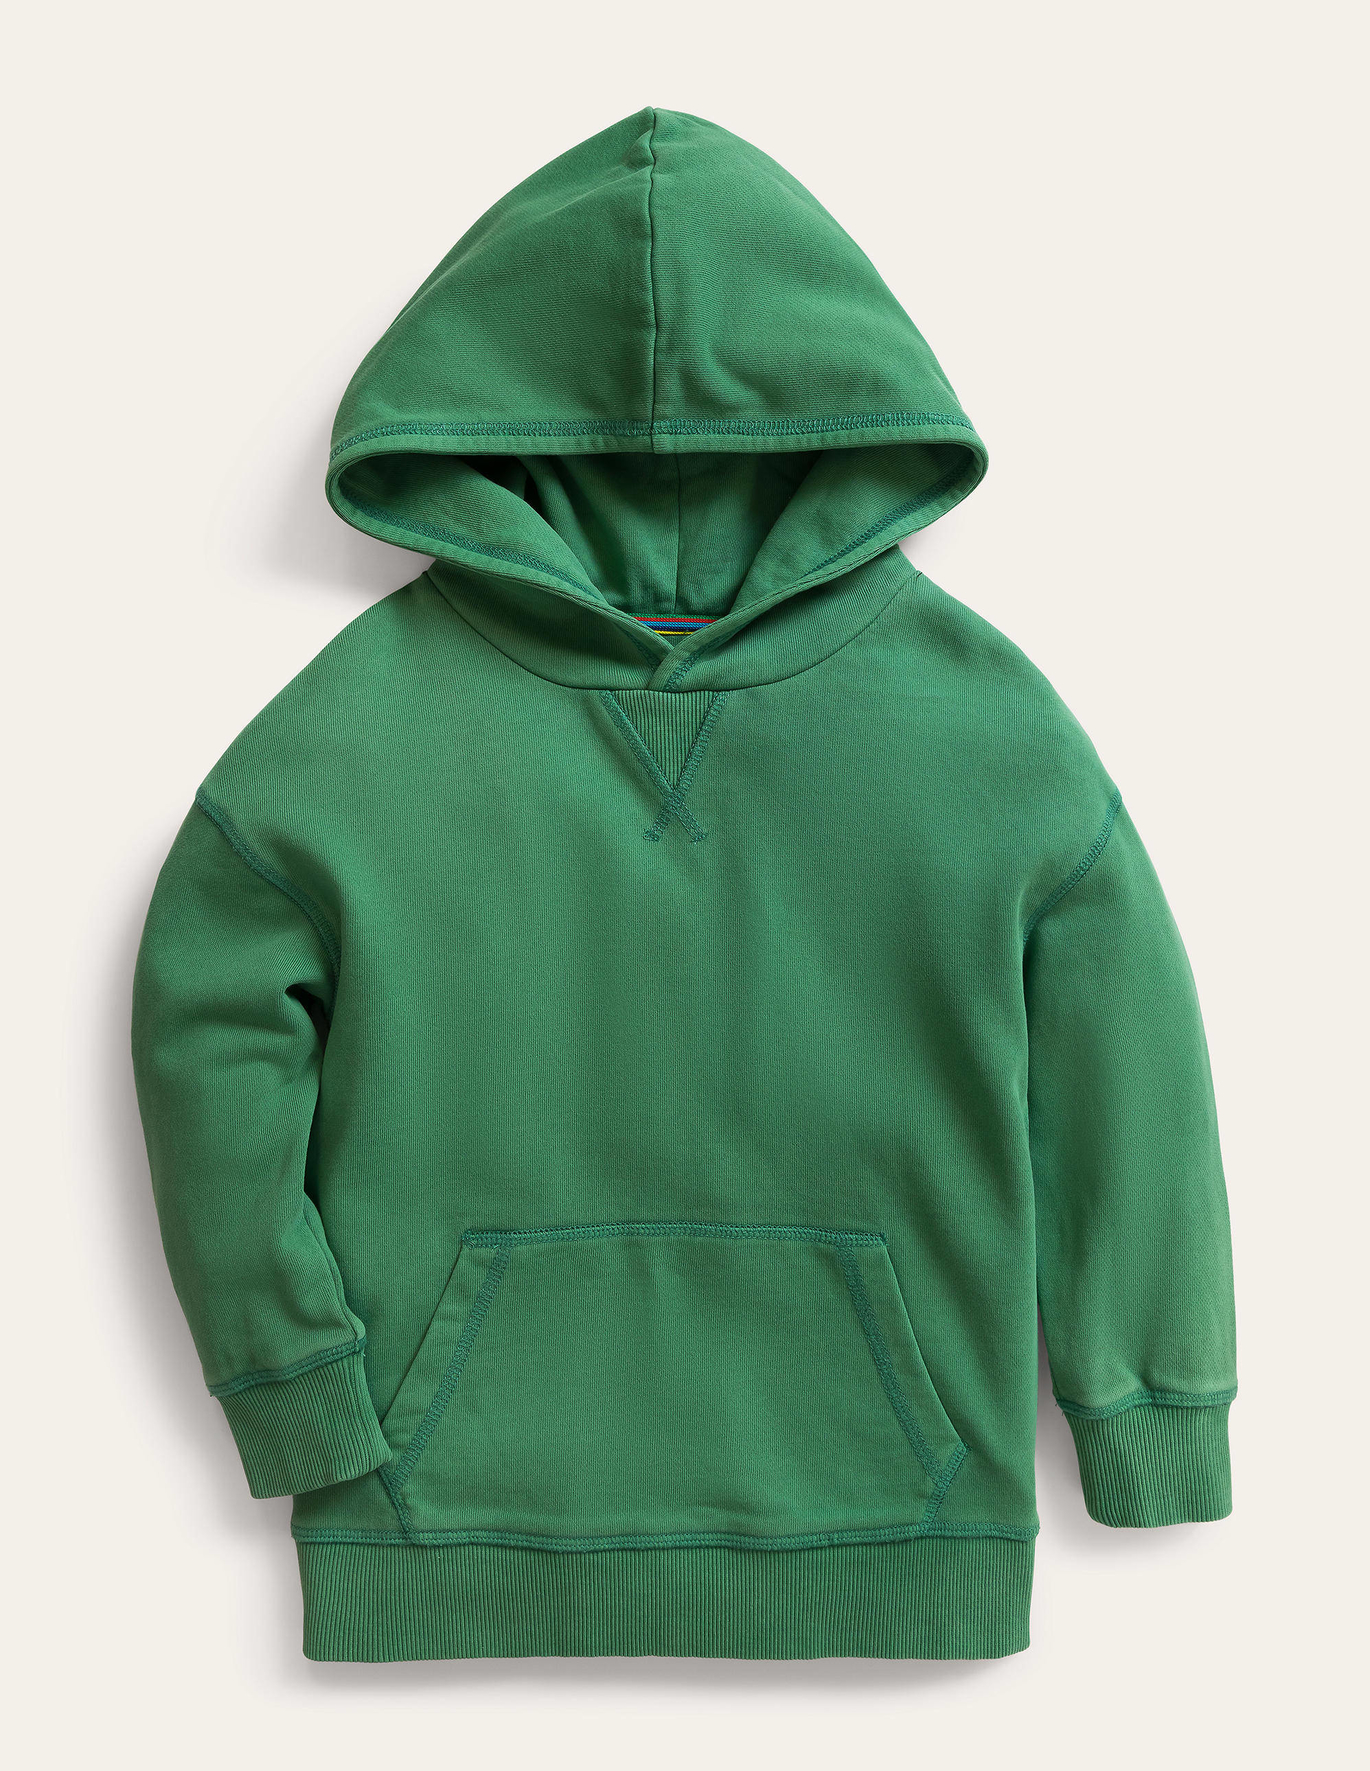 Boden Garment Dye Hoodie - Deep Grass Green